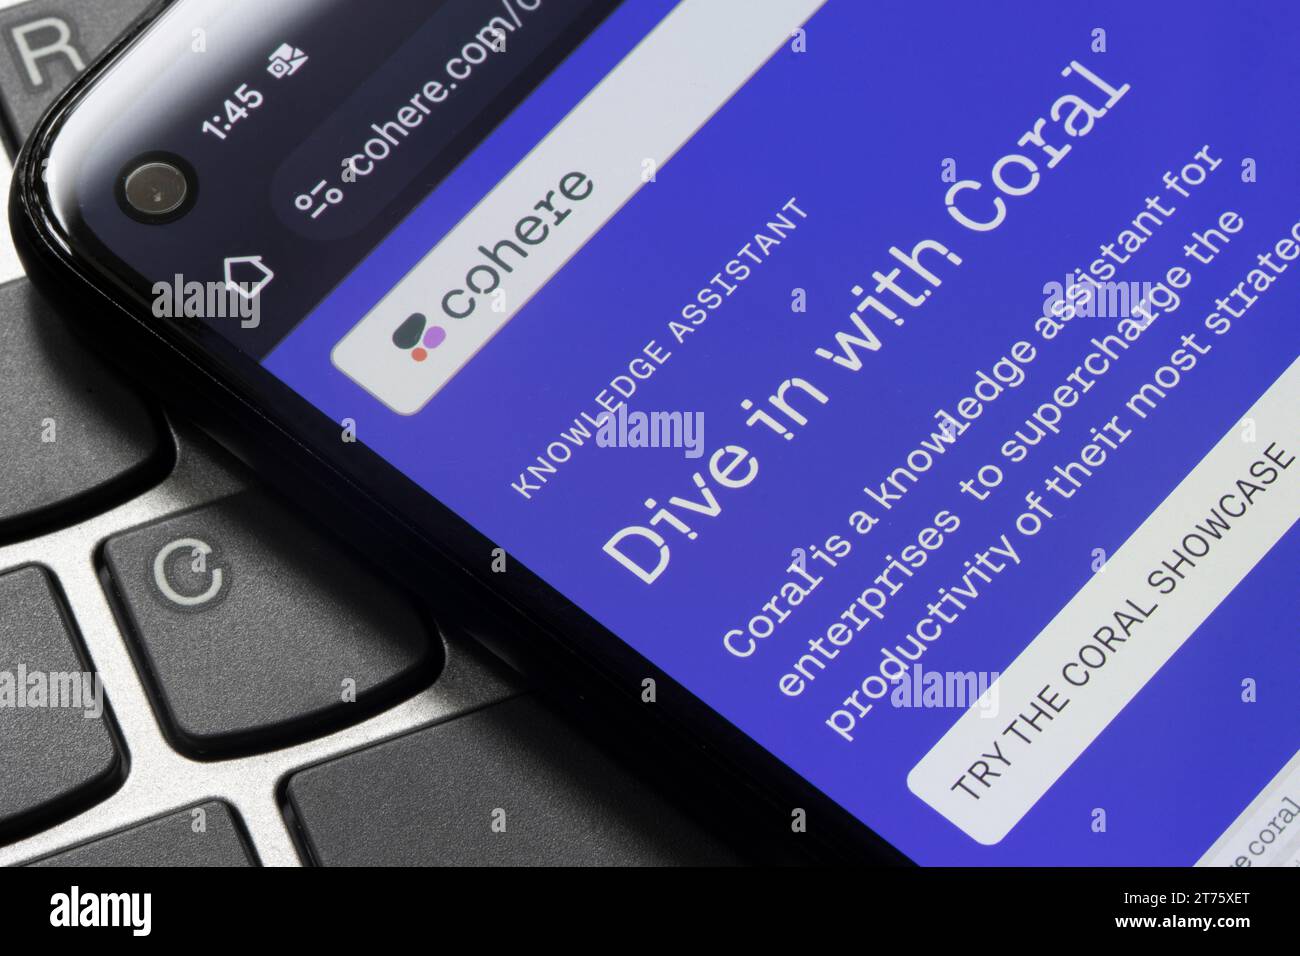 Die Webseite von Cohere's Wissensassistent Coral ist auf der Webseite auf einem Smartphone zu sehen. Cohere ist ein kanadisches Technologieunternehmen, das sich auf KI-Plattformen konzentriert... Stockfoto